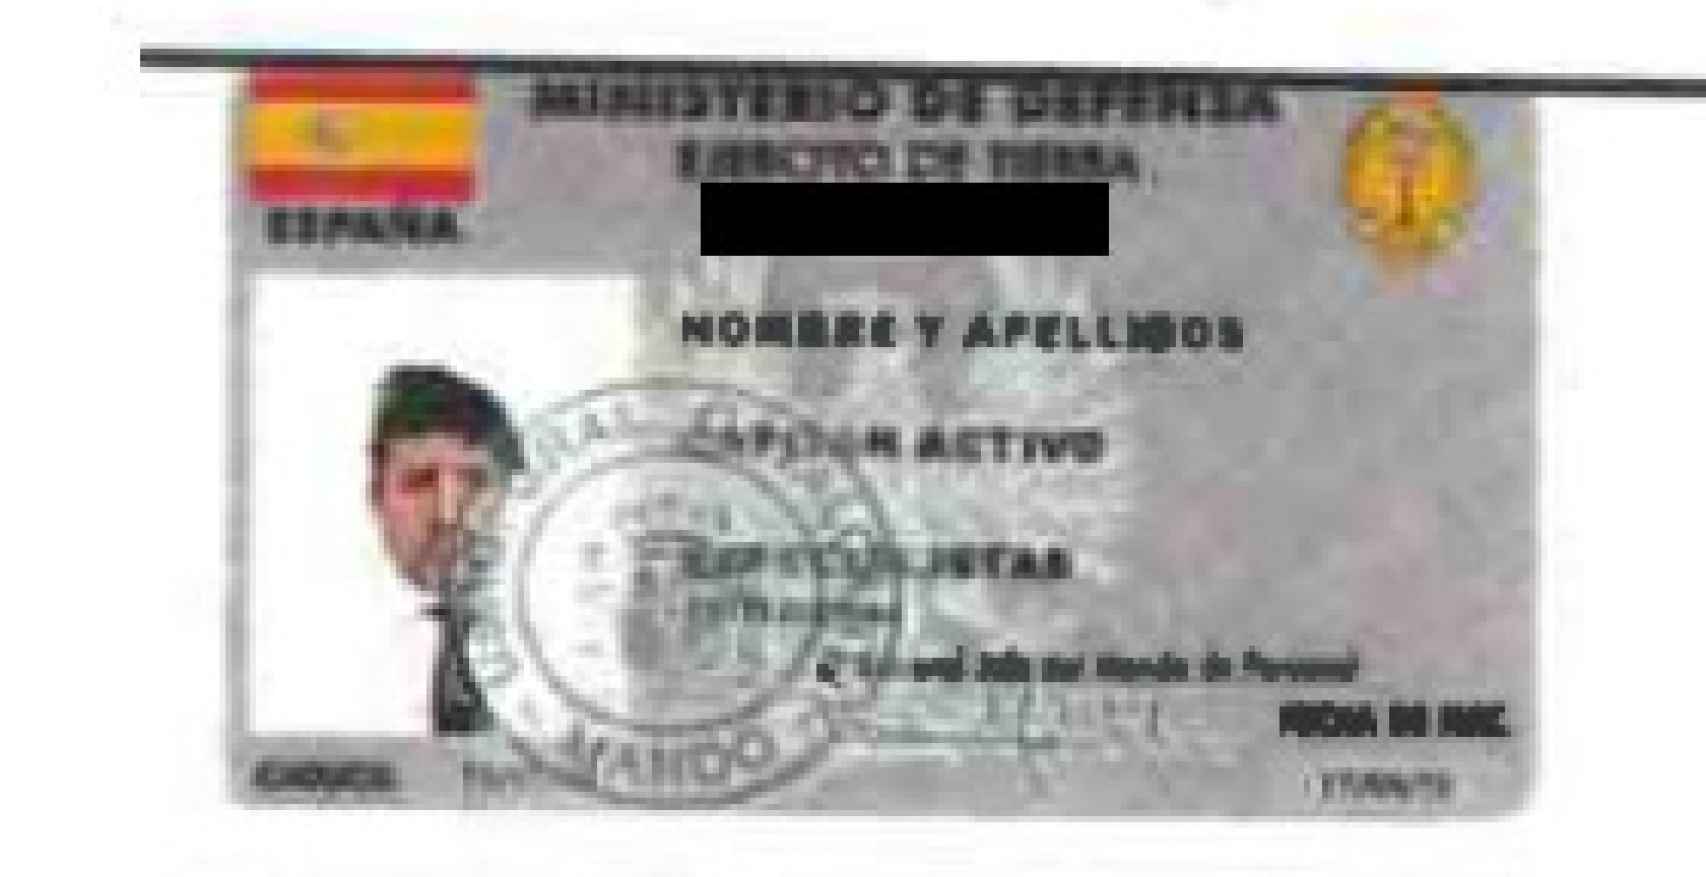 Un carné falso con la fotografía de Luceño disfrazado de capitán.